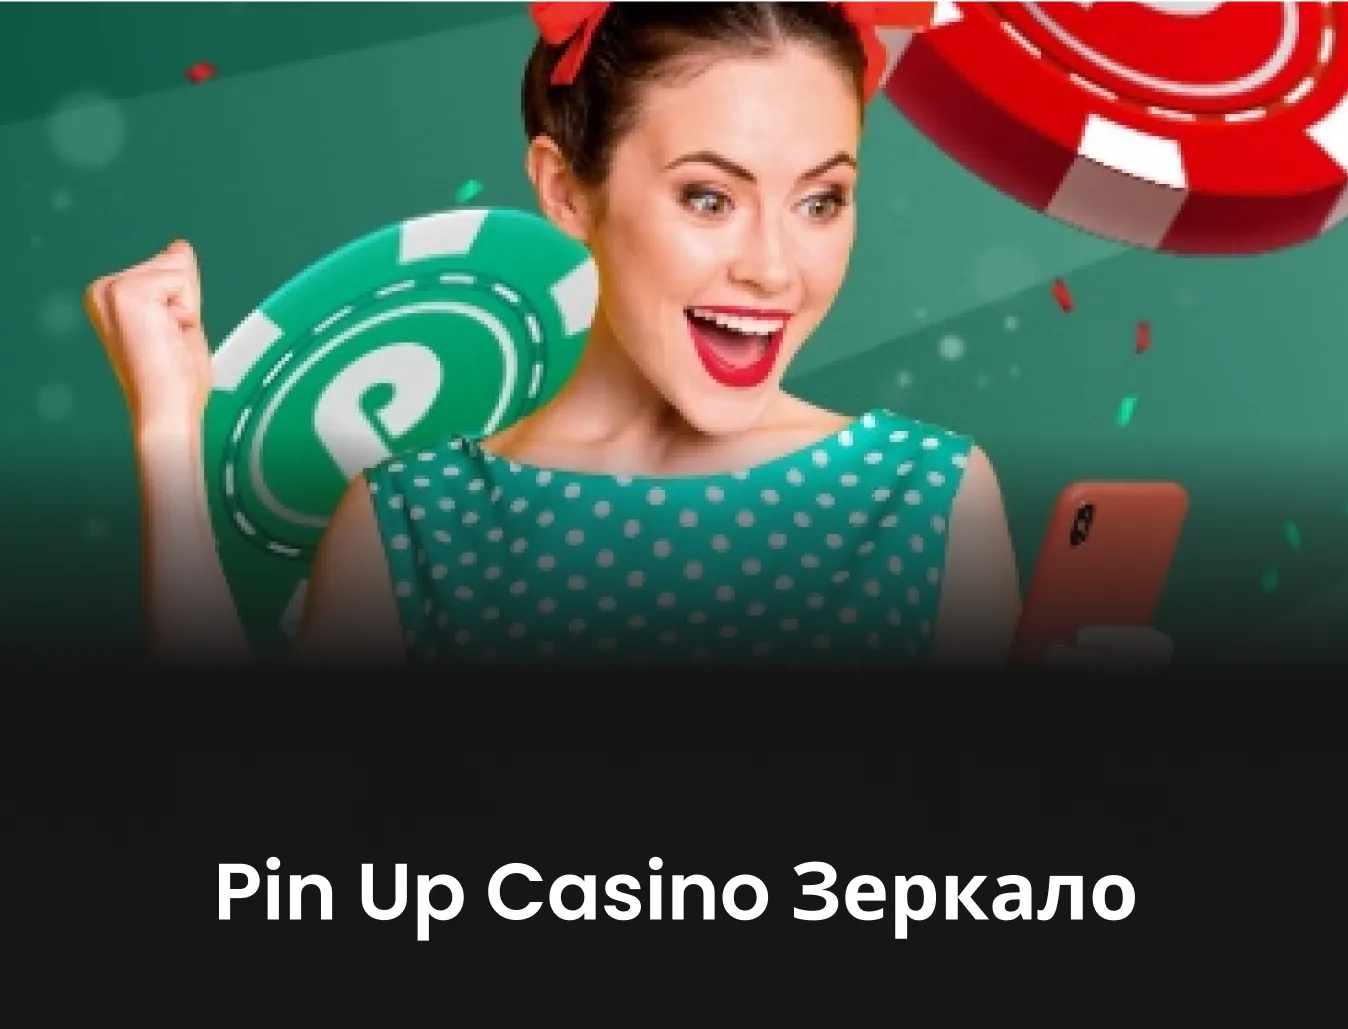 Asesoramiento gratuito sobre pin up casino opiniones